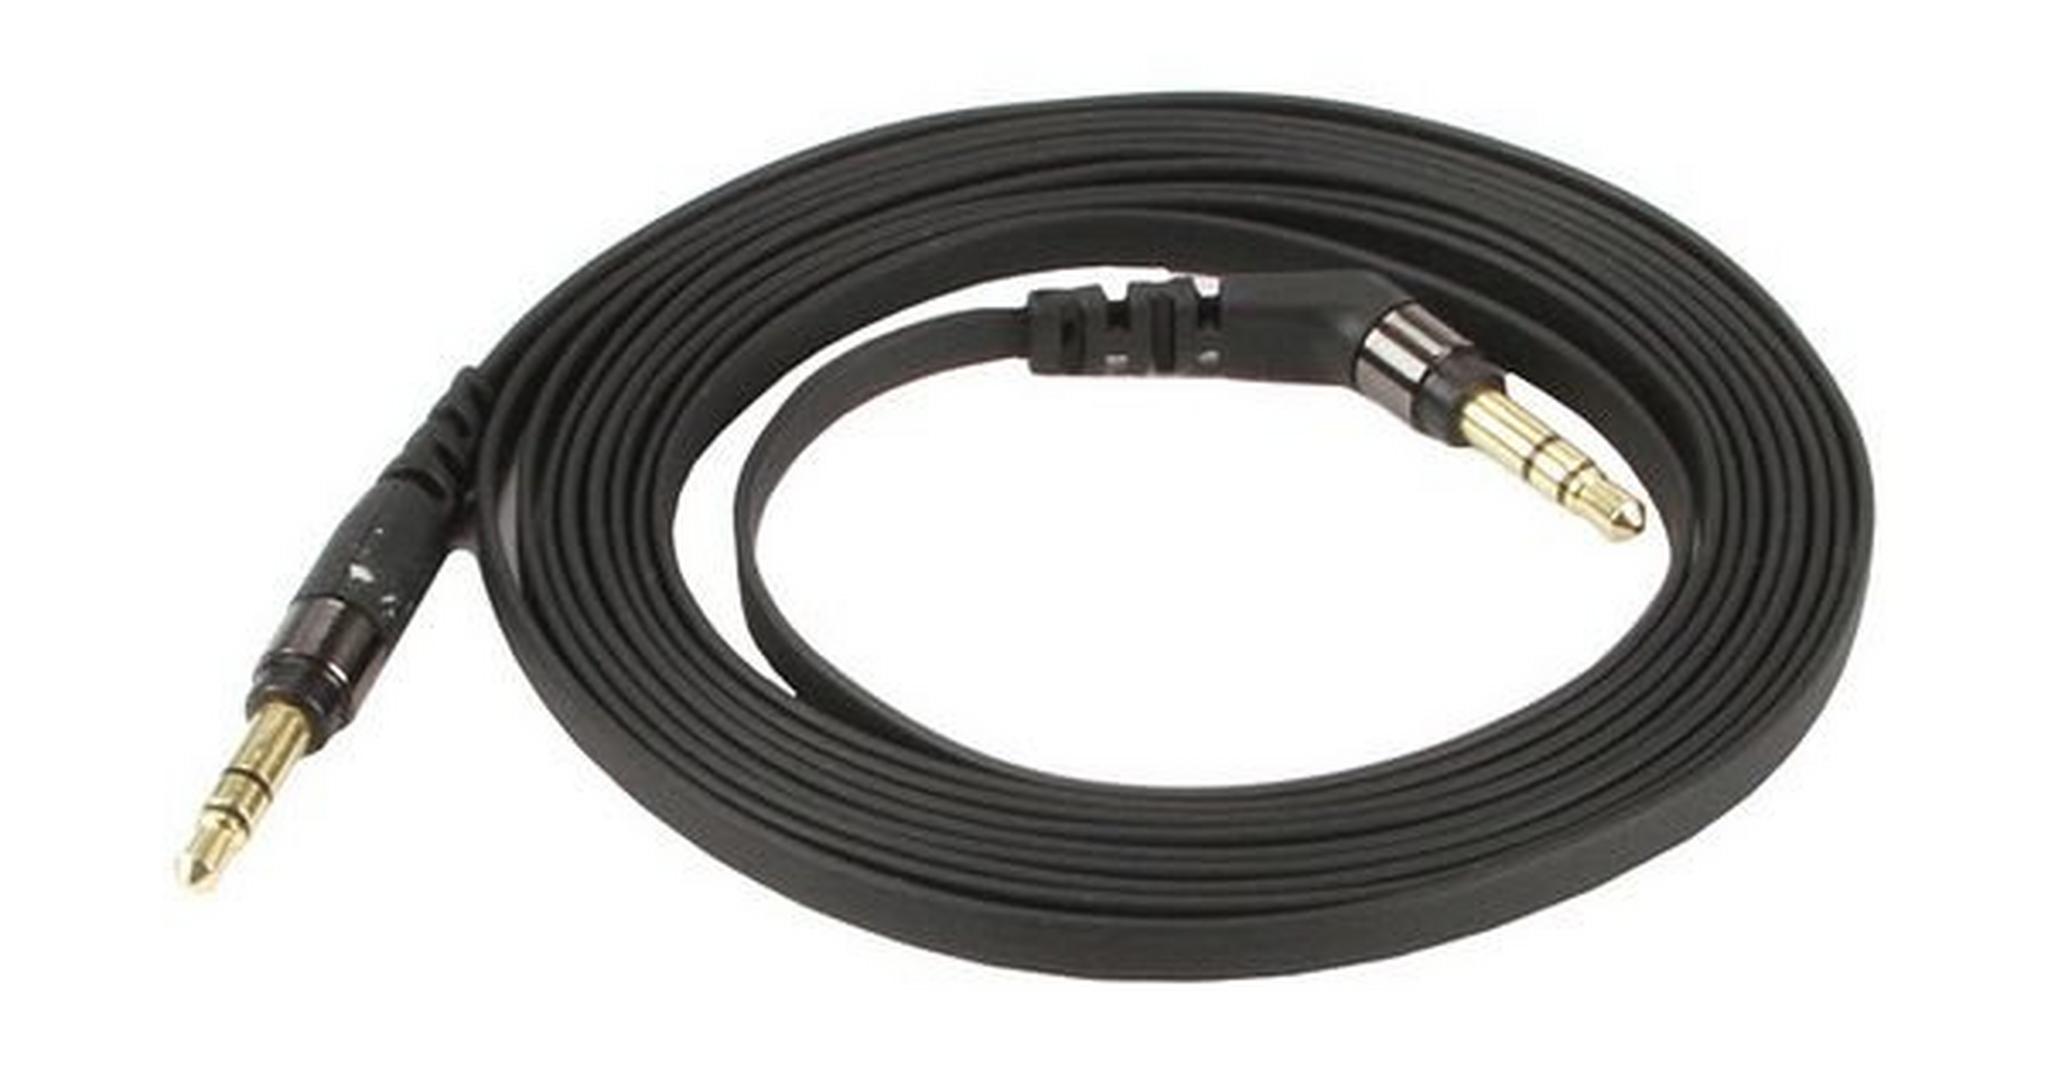 Scosche AUX Flatout Audio Cable 1.8-meter (SC-AUX6F) - Black